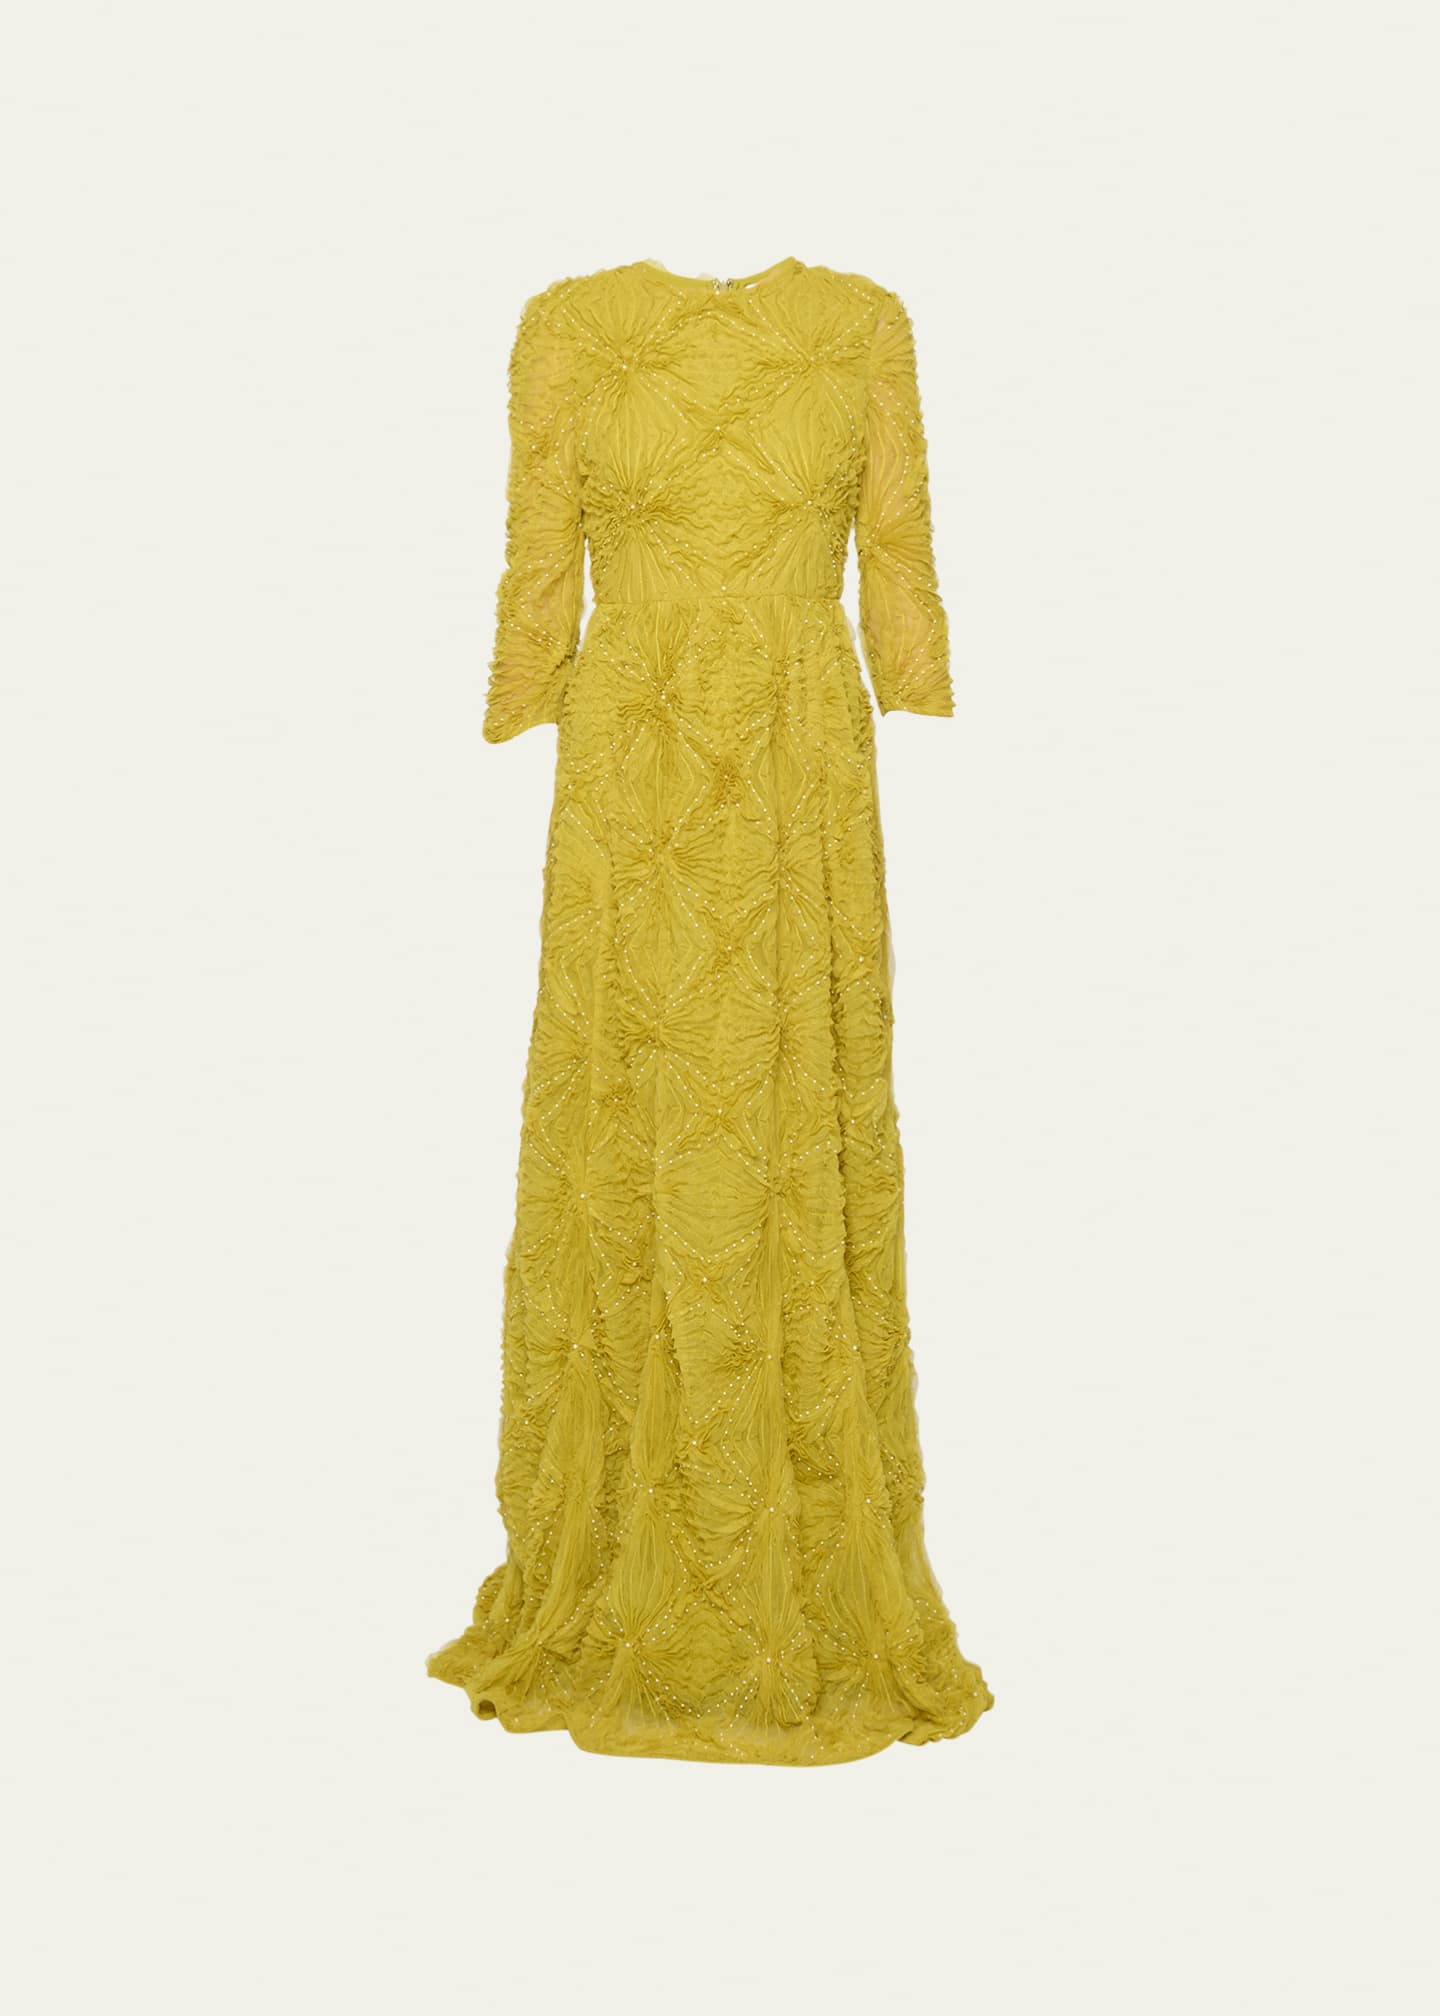 Erdem Textured Floor Length Gown w/ Pearlescent Details - Bergdorf Goodman